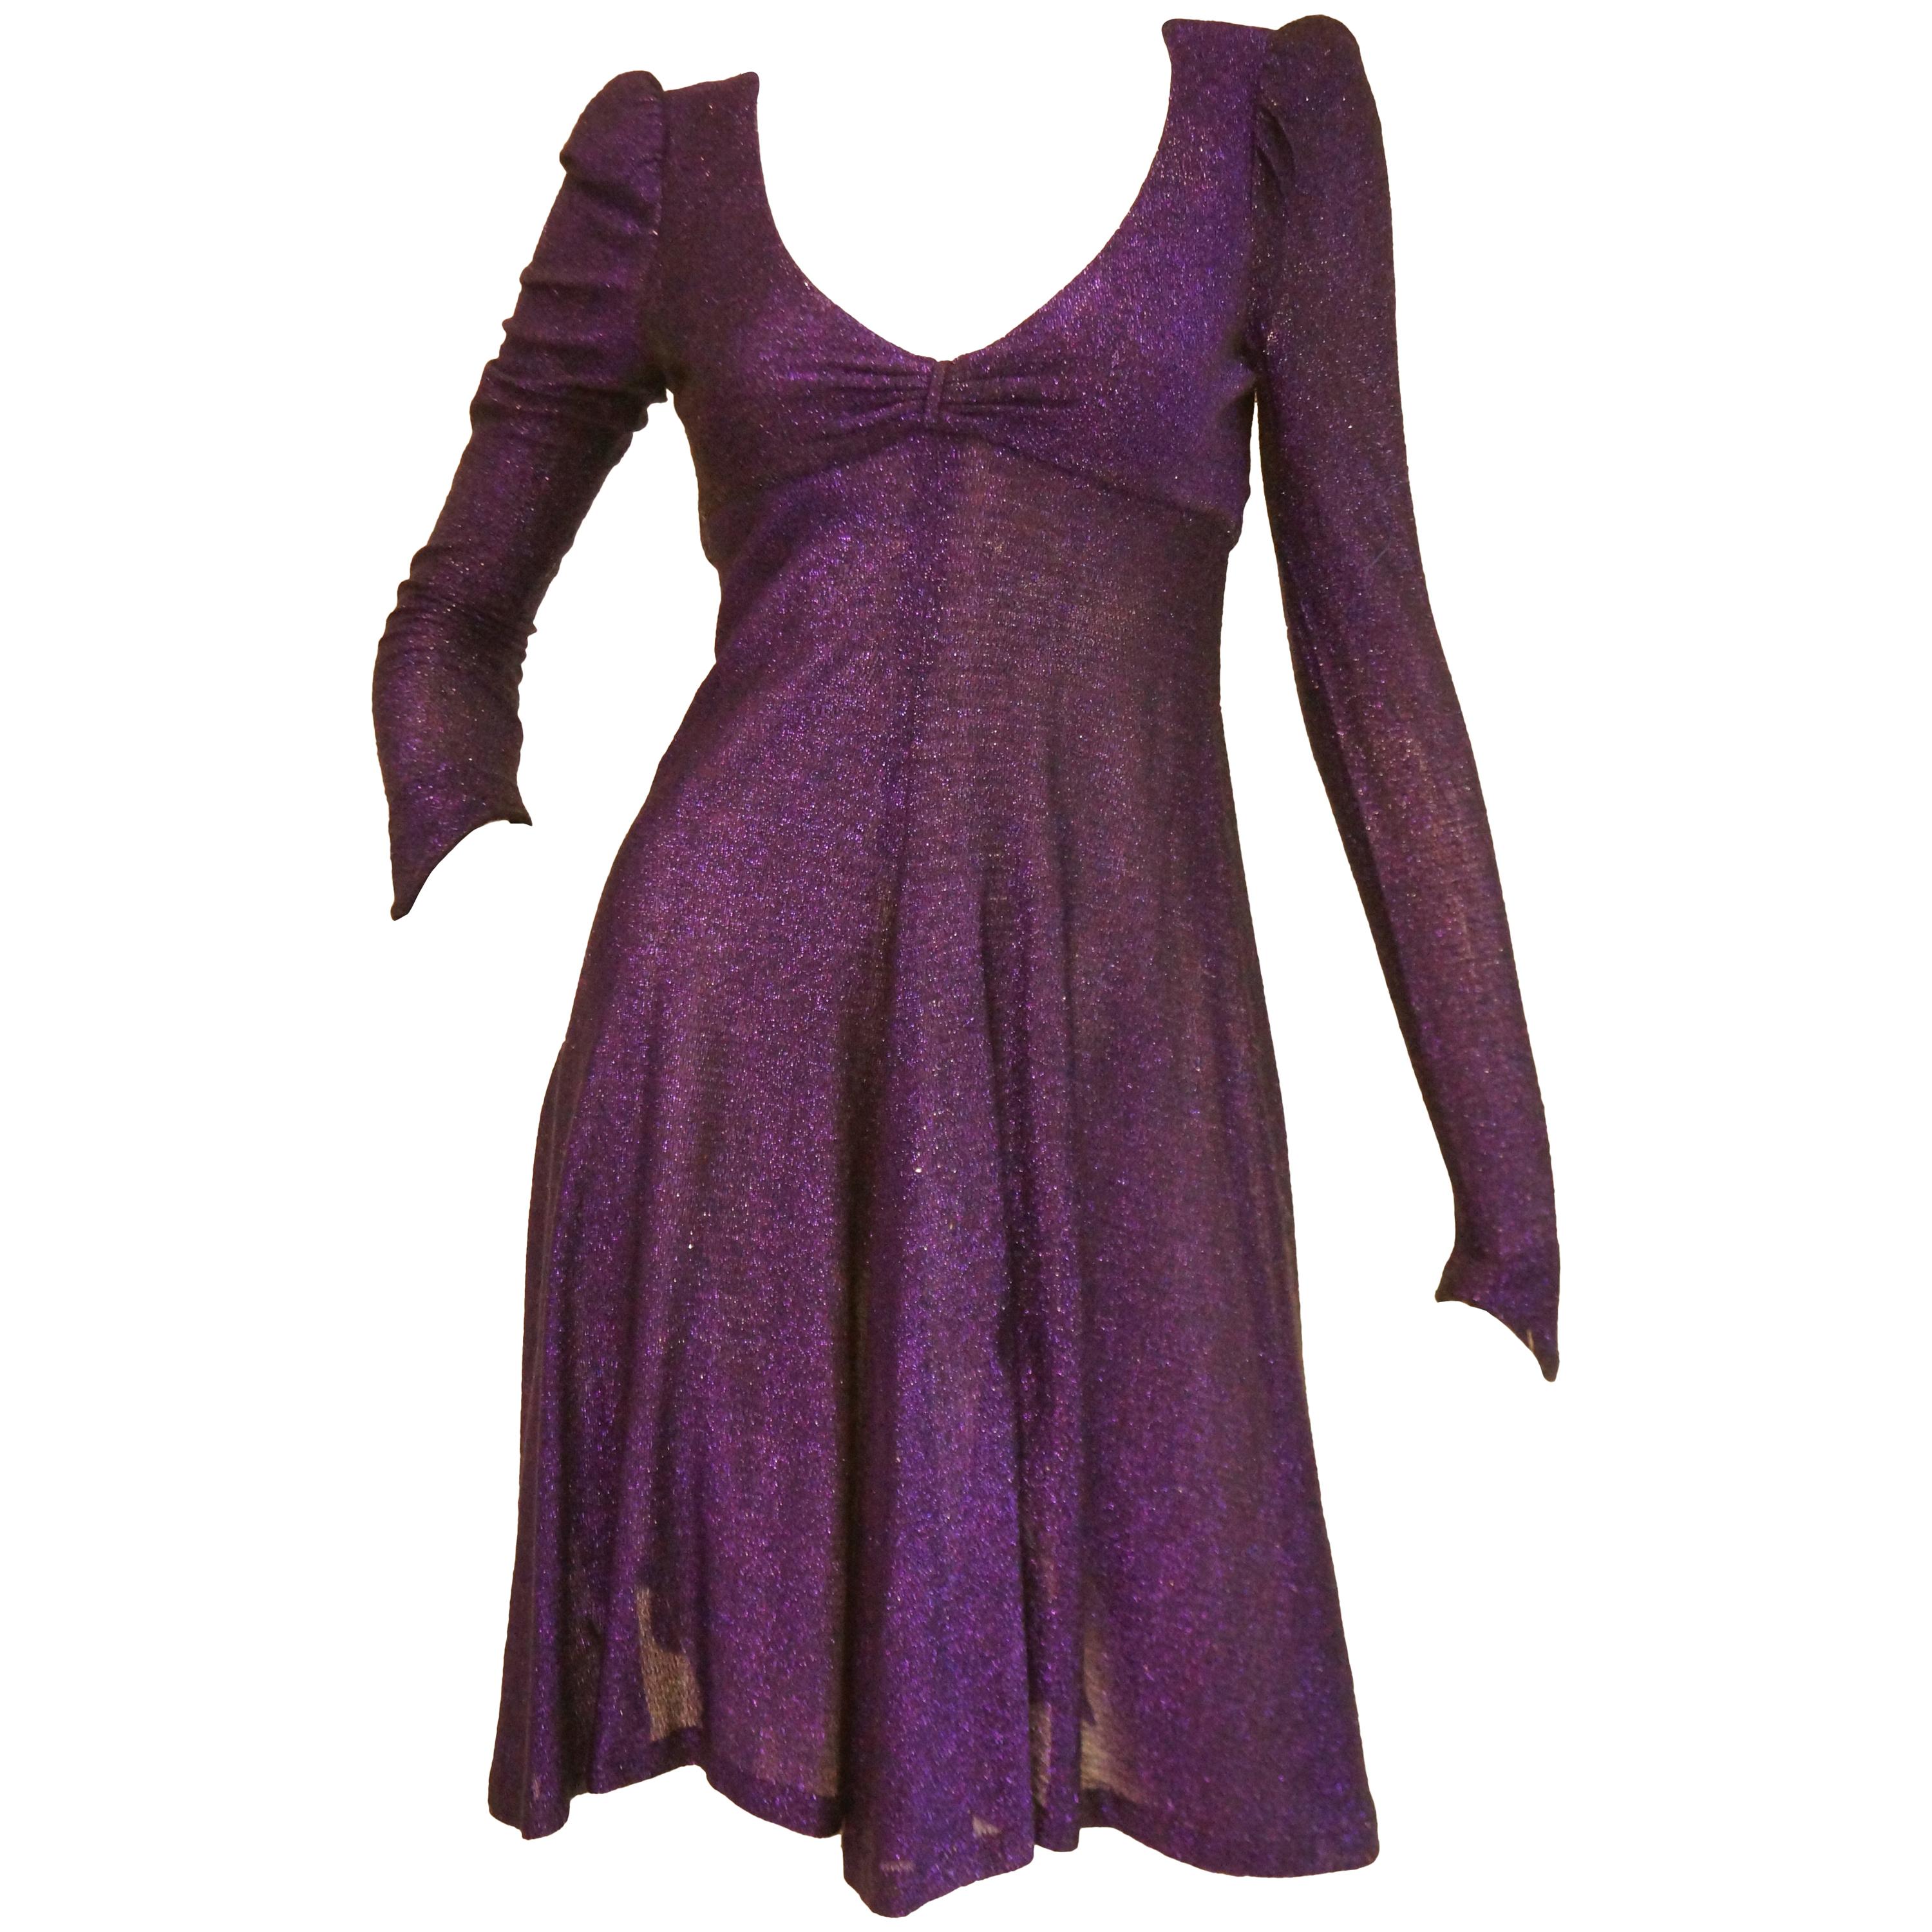 biba purple dress